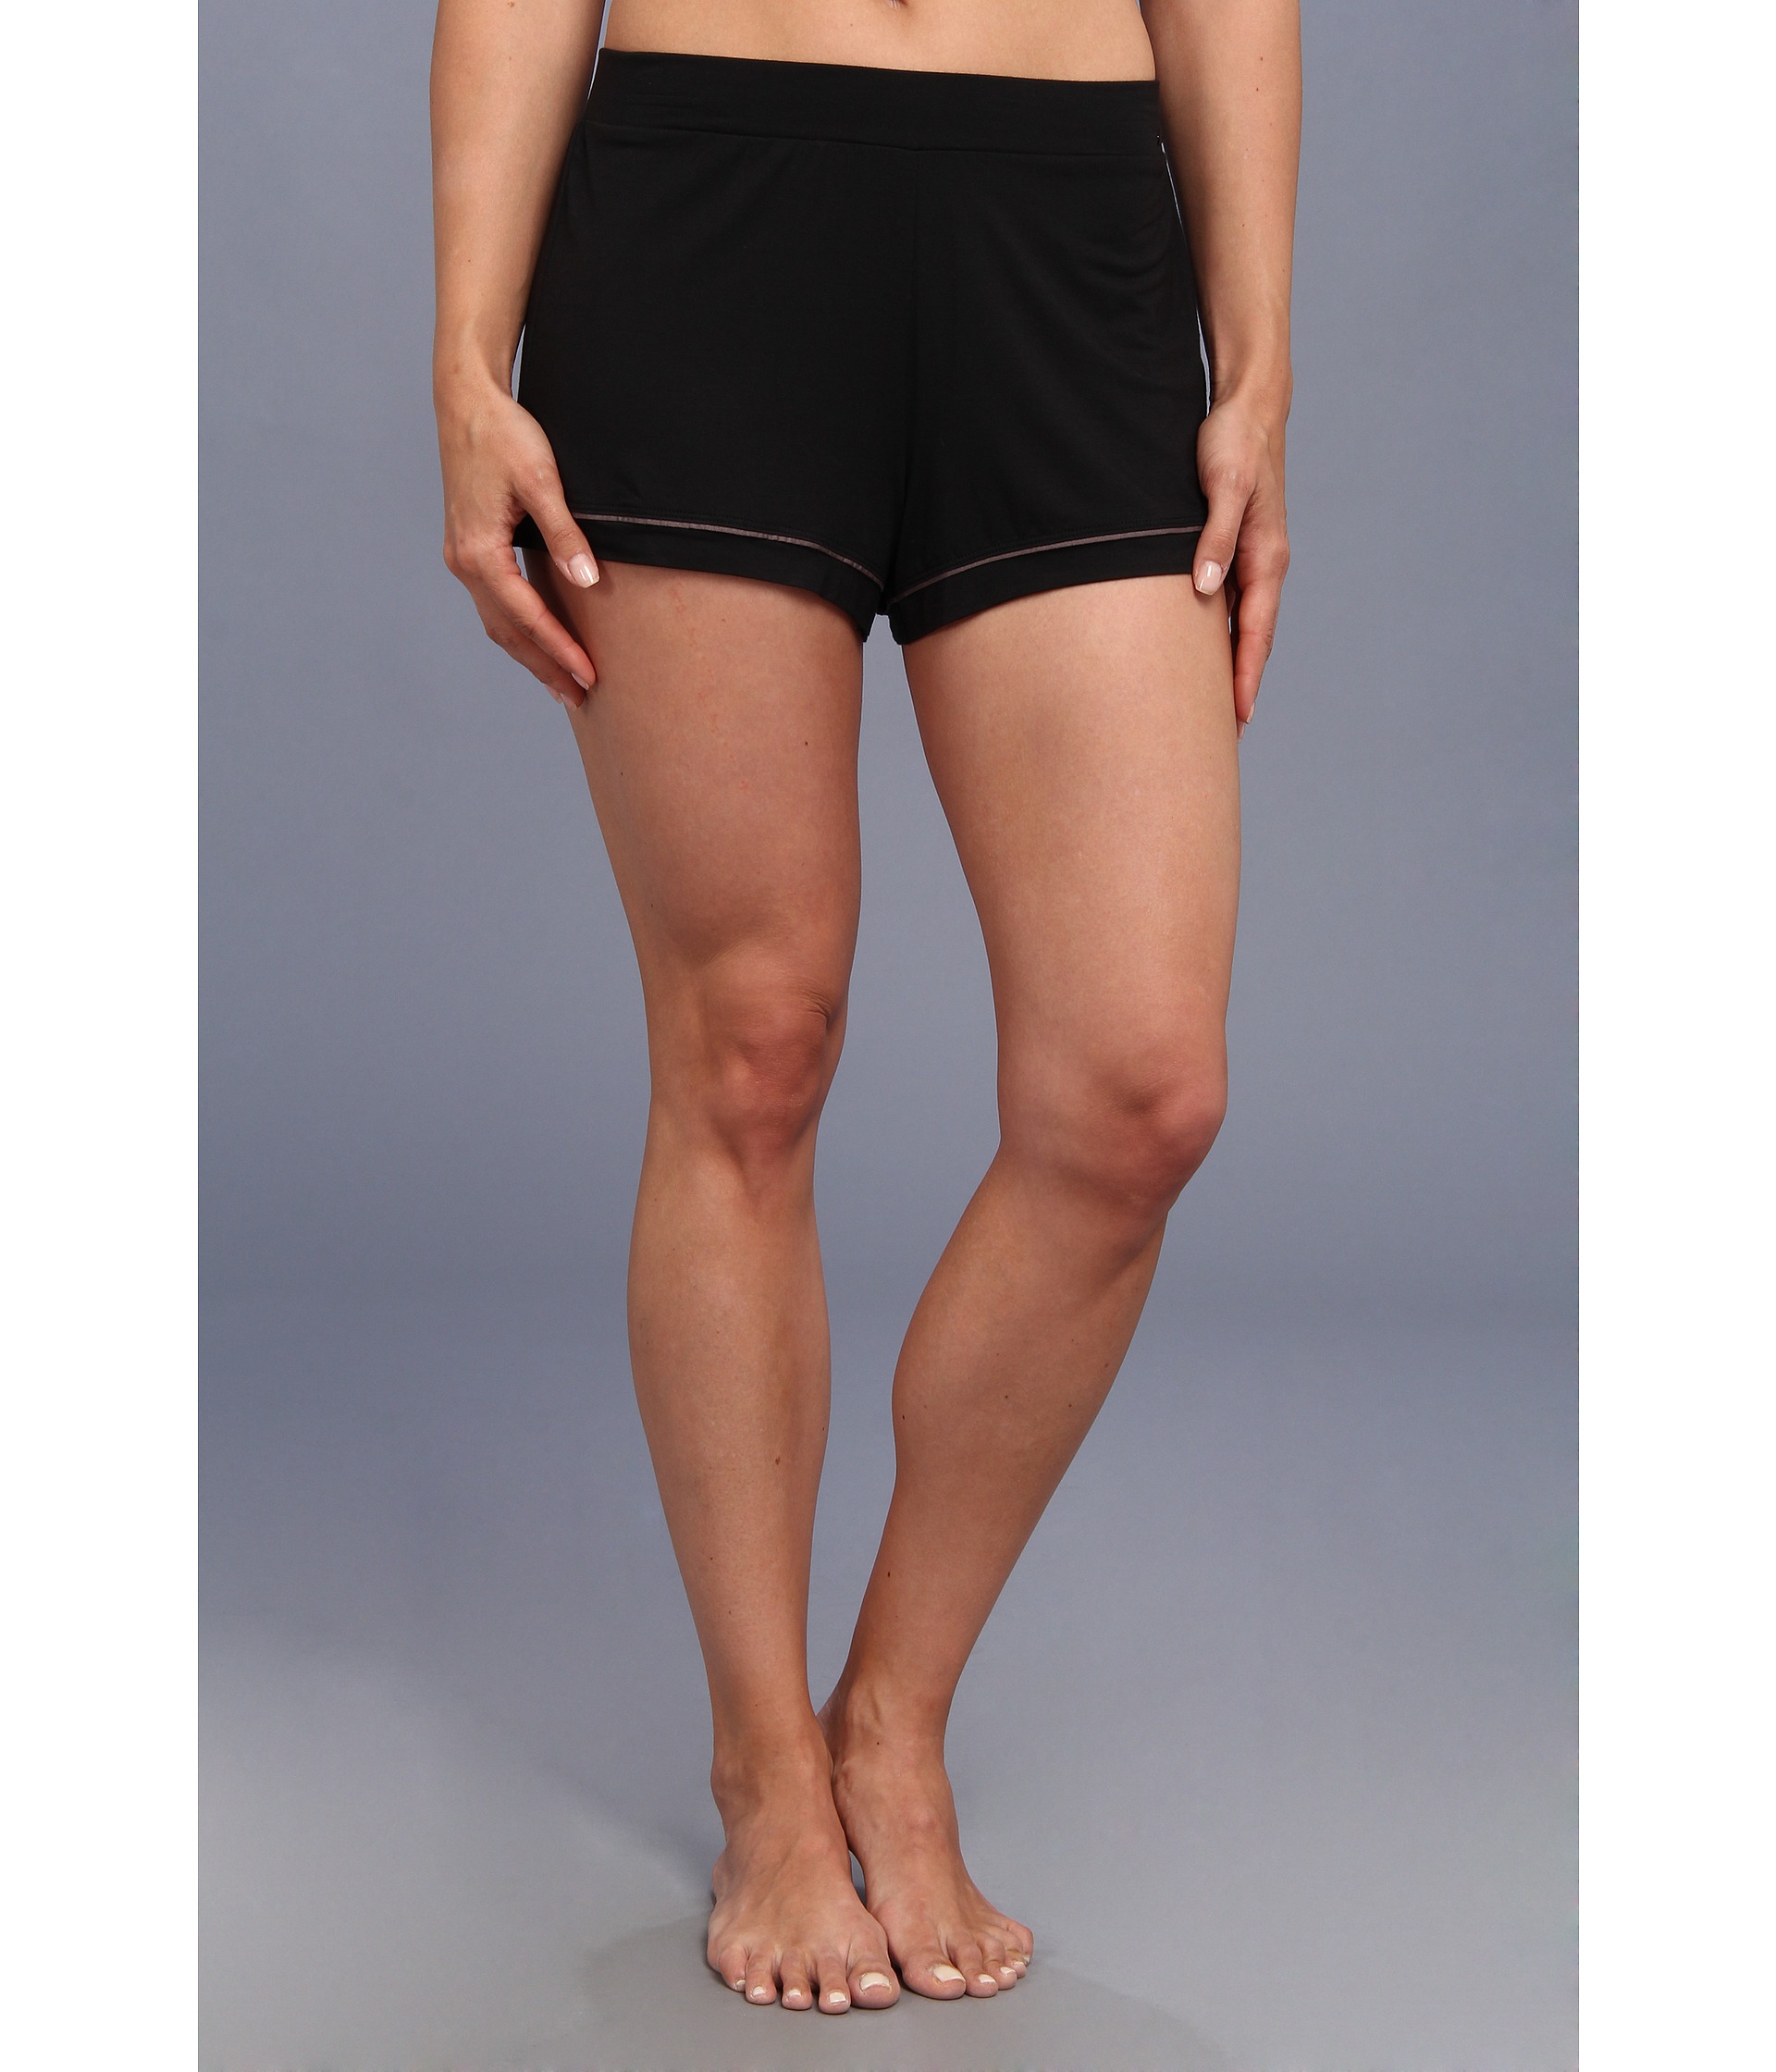 ... Klein Underwear Structure Pj Short Black | Shipped Free at Zappos